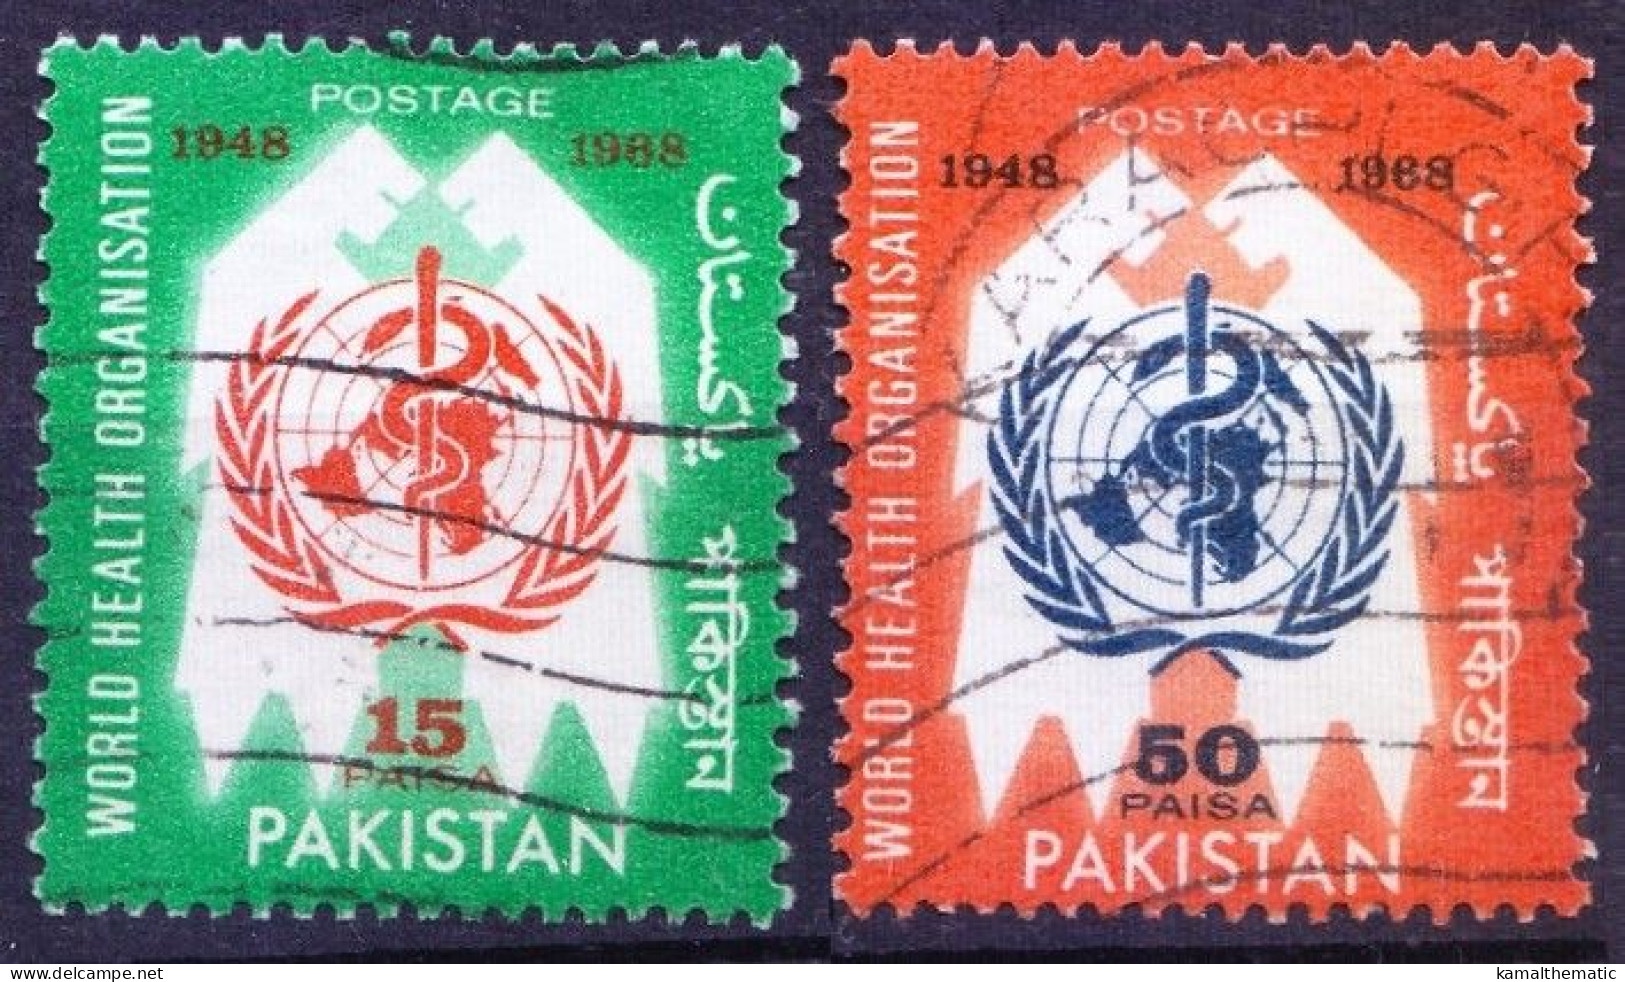 Pakistan 1968 Fine Used 2v, W.H.O. Emblem - WHO